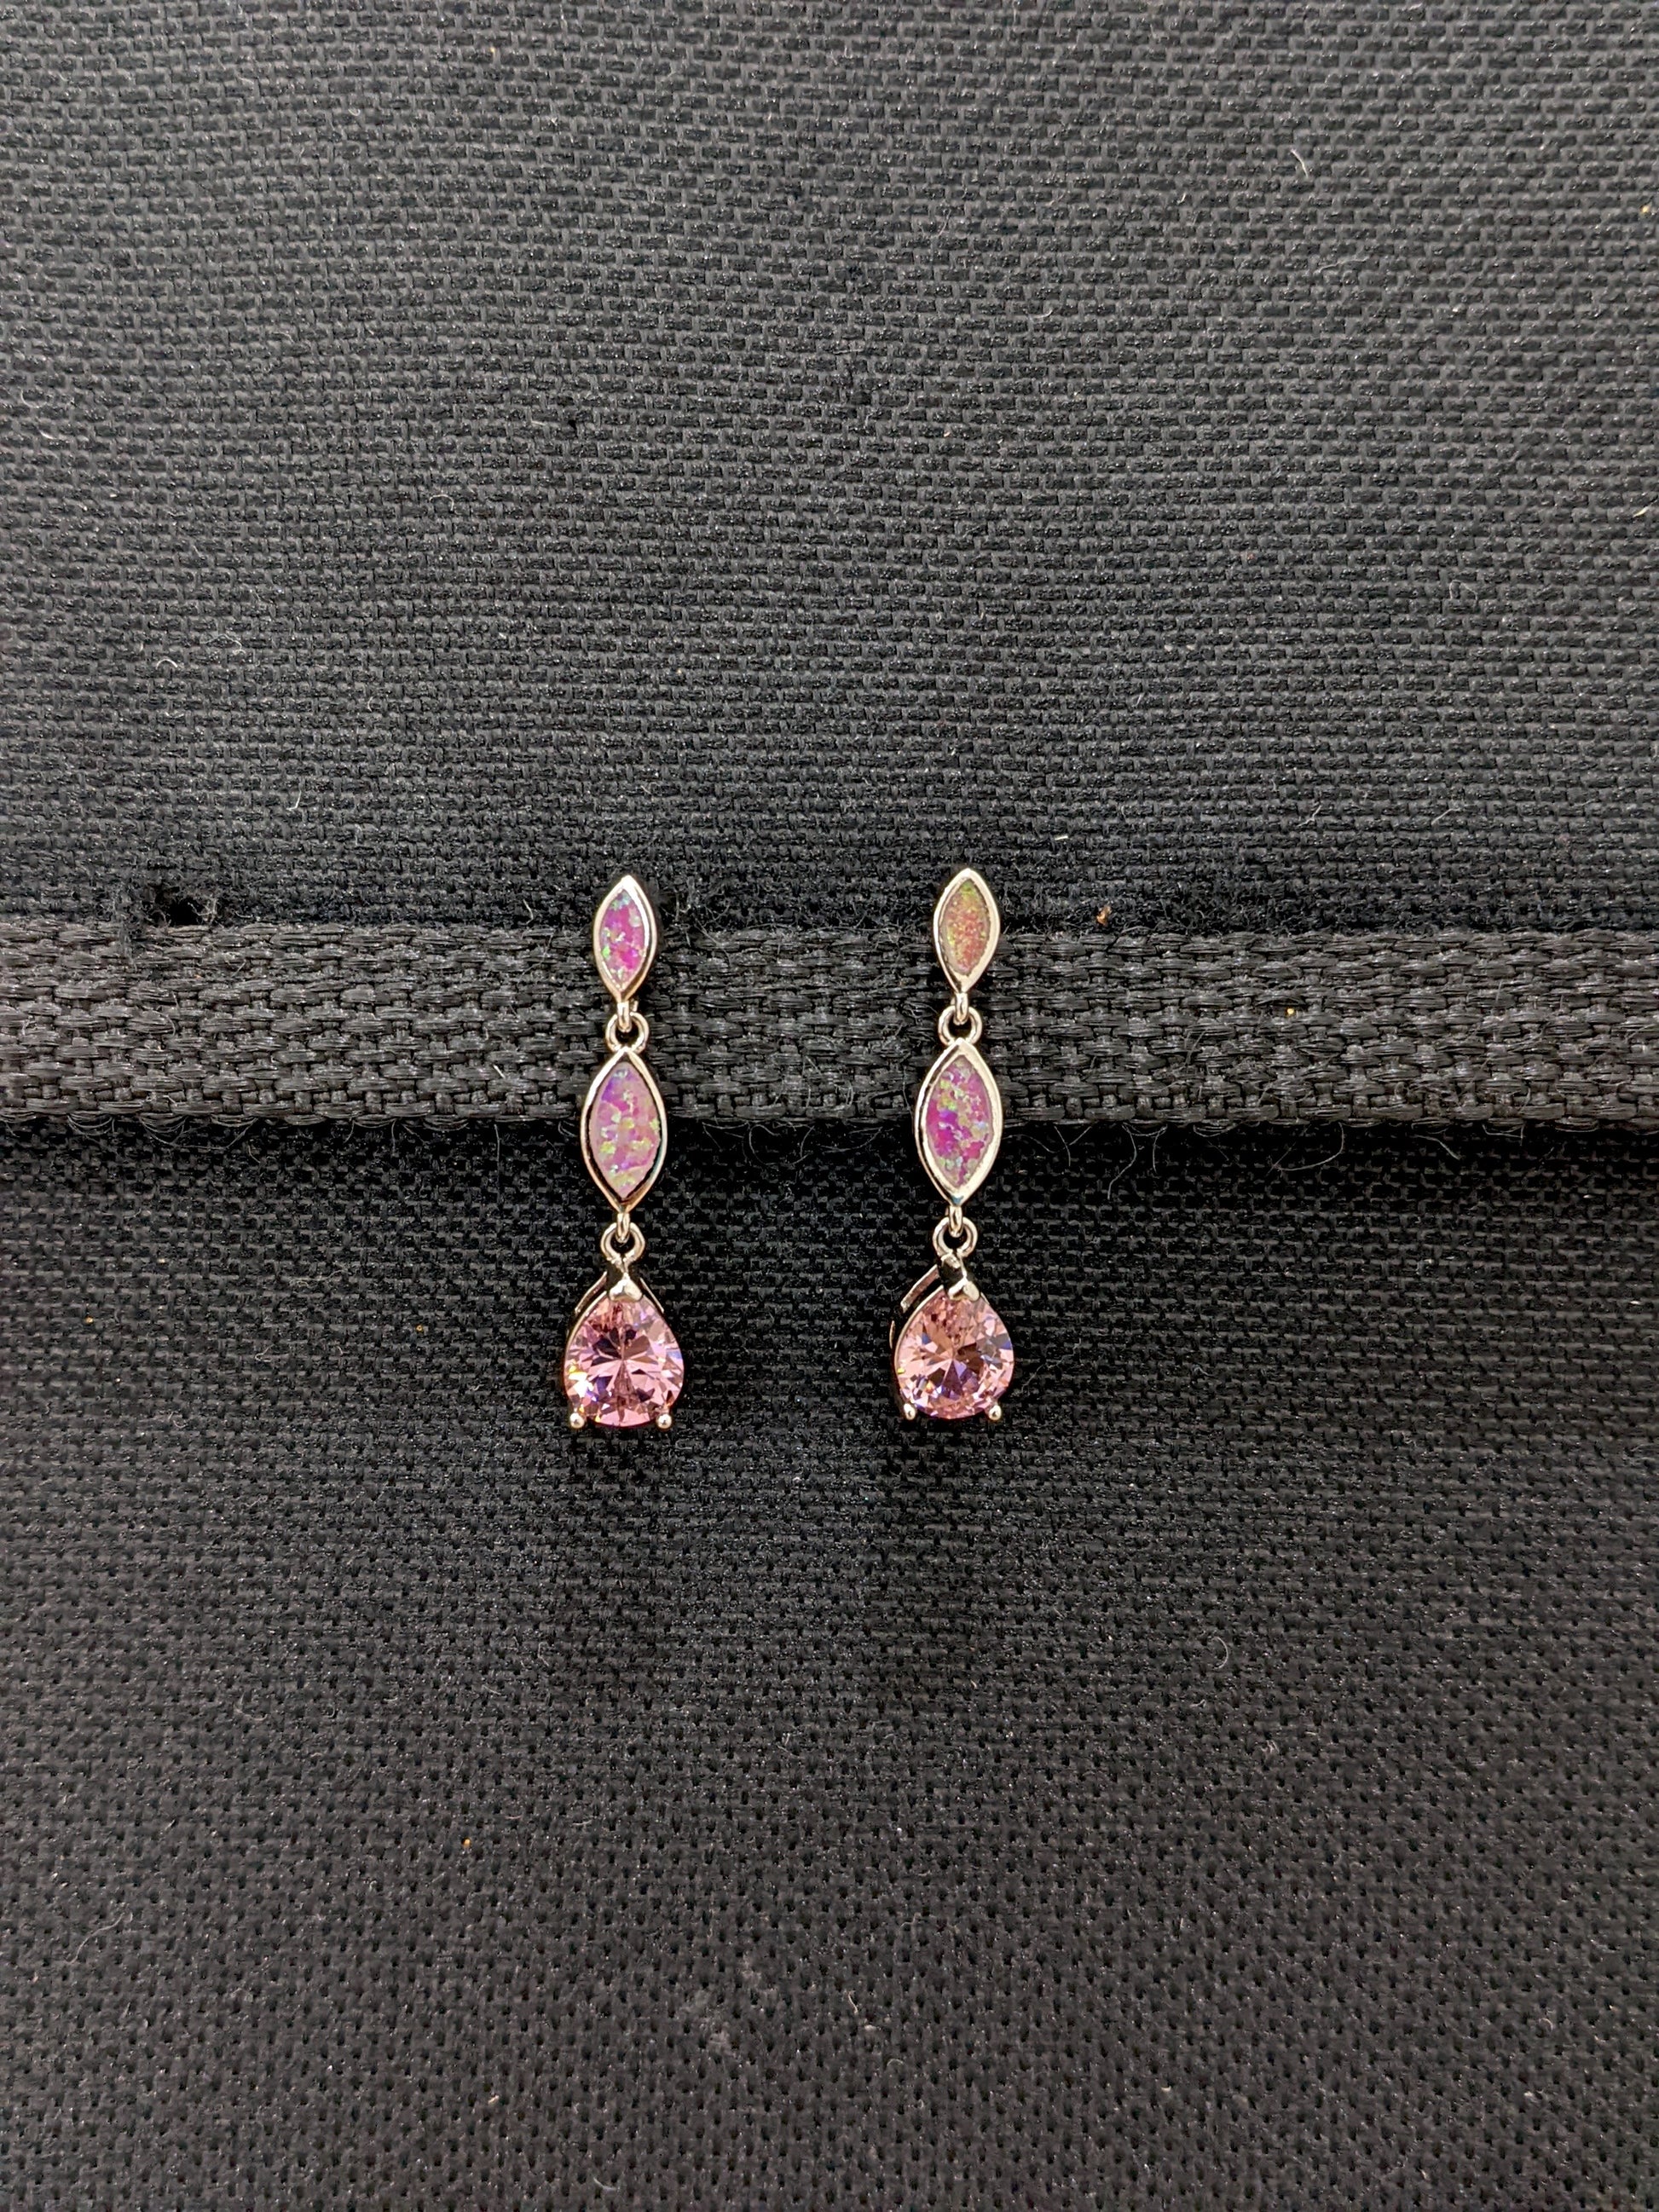 Triple tear drop Pink opal Earrings - Simpliful